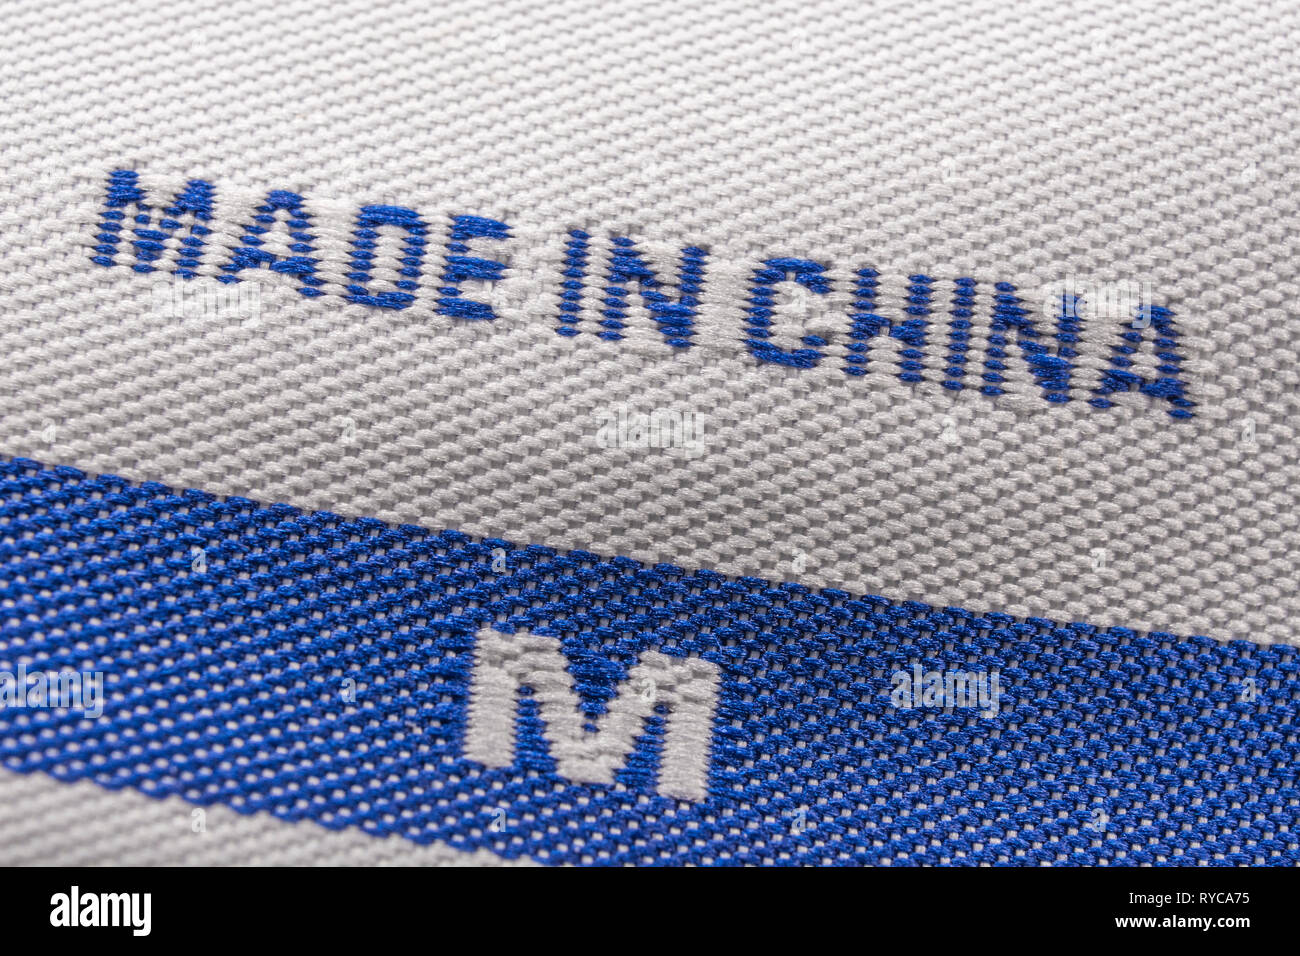 Etichetta di abbigliamento Made in China cucita in indumento. Per le importazioni cinesi di esportazioni, i dazi della guerra commerciale Usa-Cina, i tessili cinesi, l’offshoring verso la Cina Foto Stock